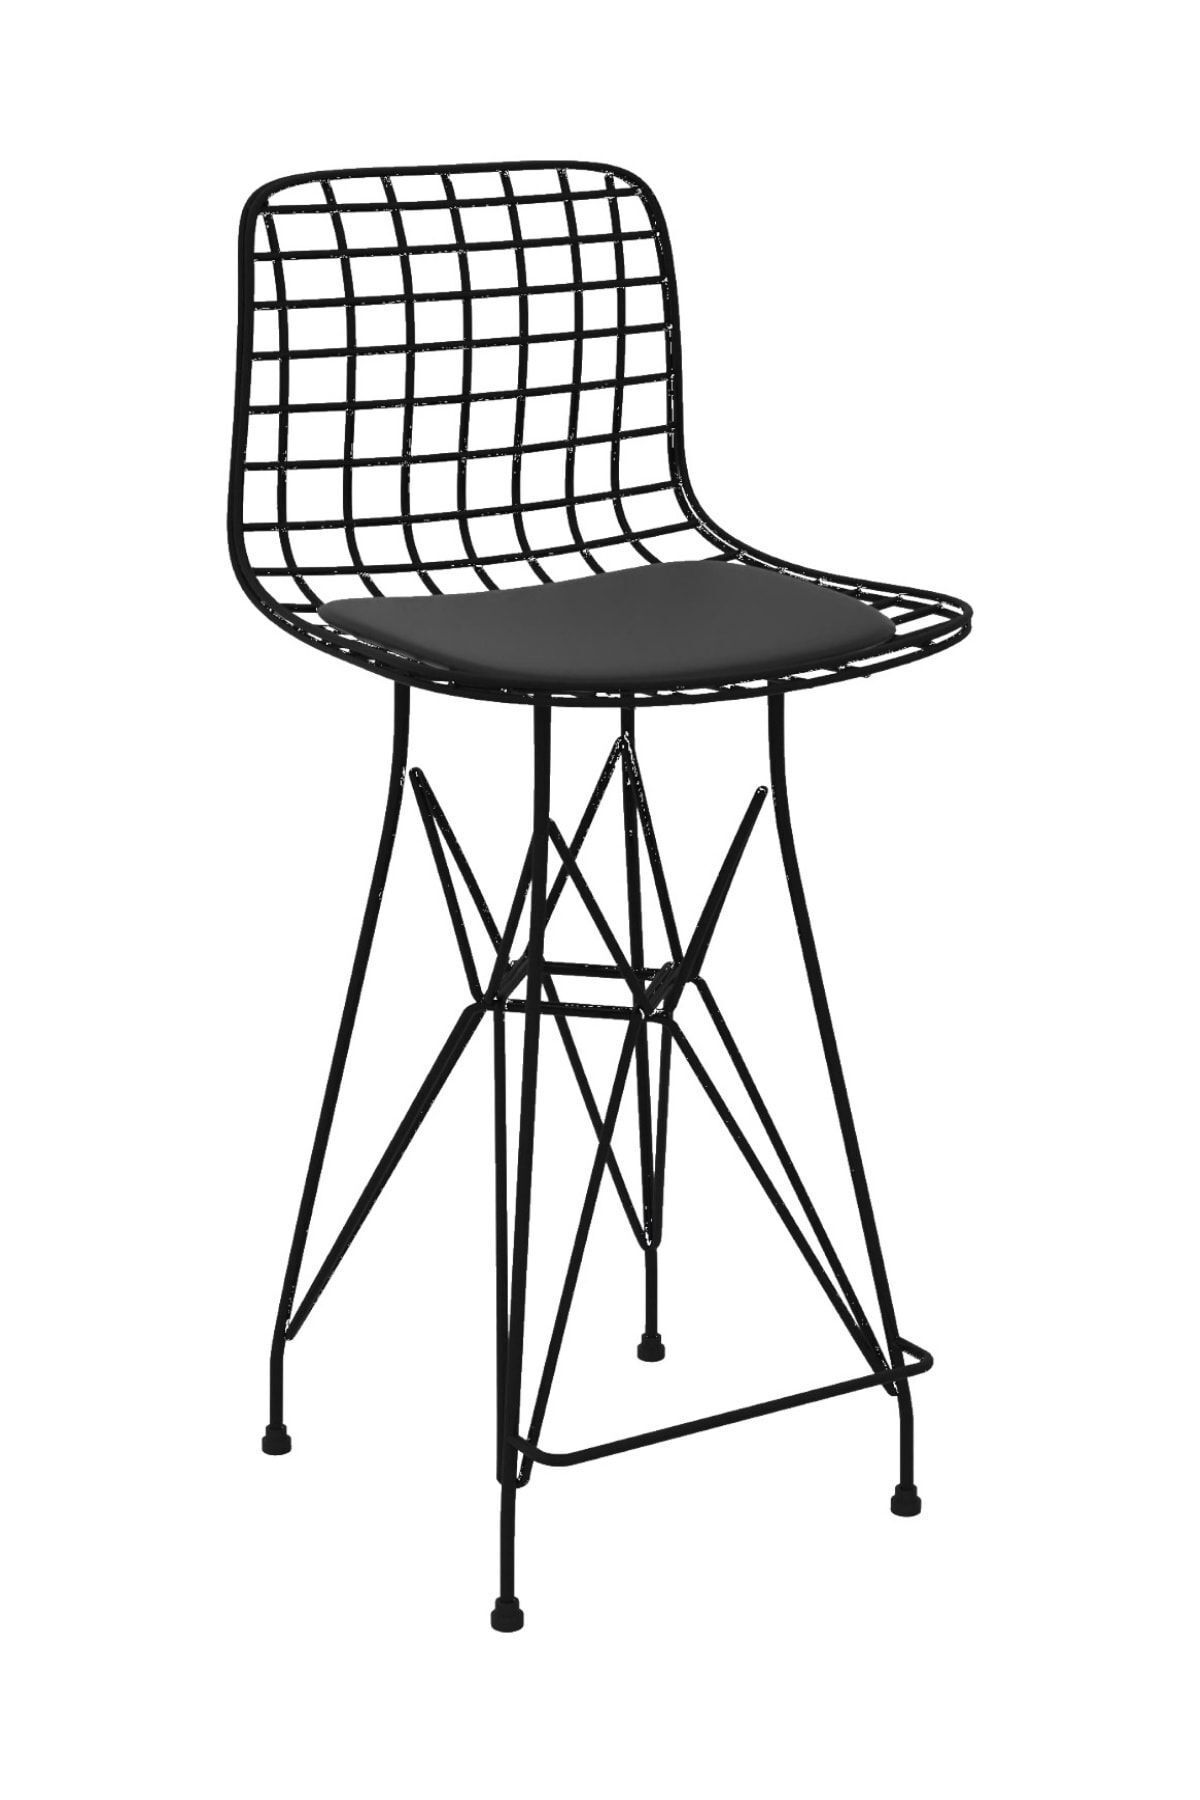 Kenzlife Knsz orta boy tel bar sandalyesi 1 li mağrur syhsyh 65 cm oturma yüksekliği mutfak bahçe cafe ofis